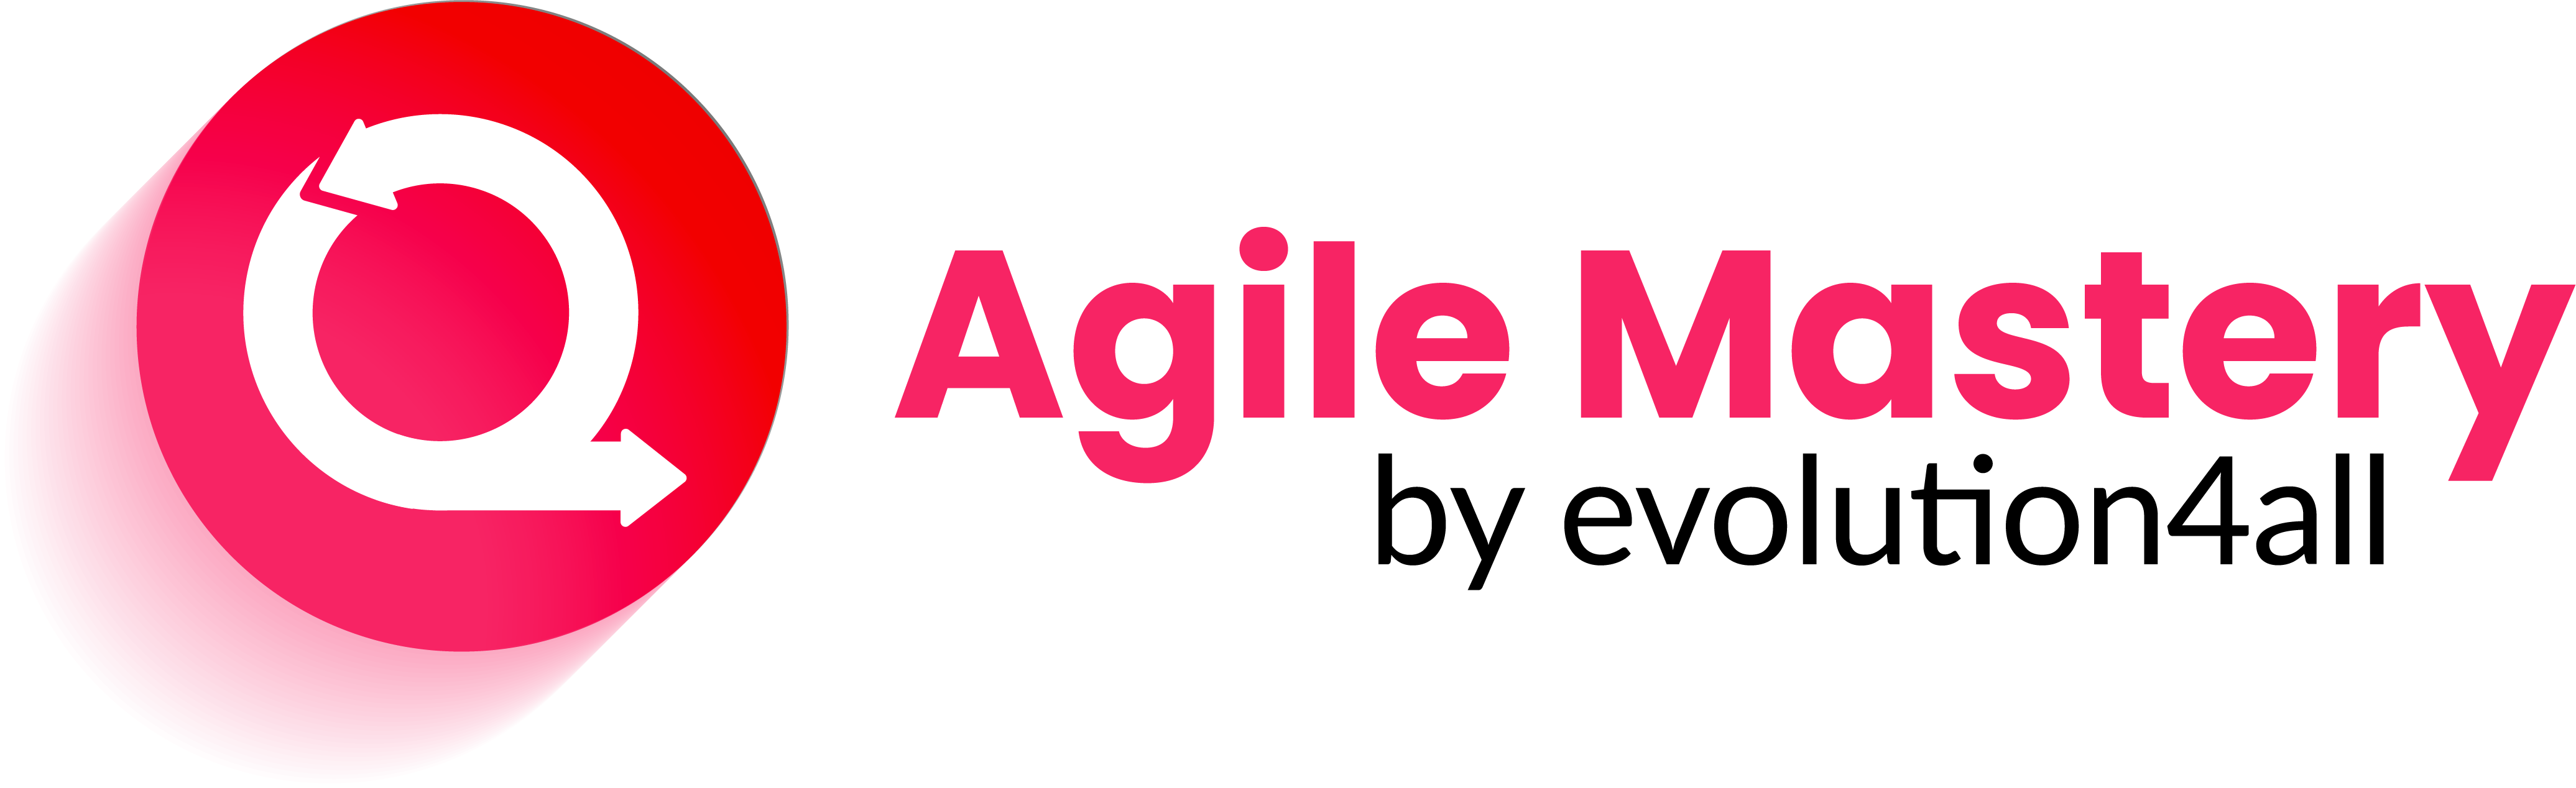 Agile Mastery